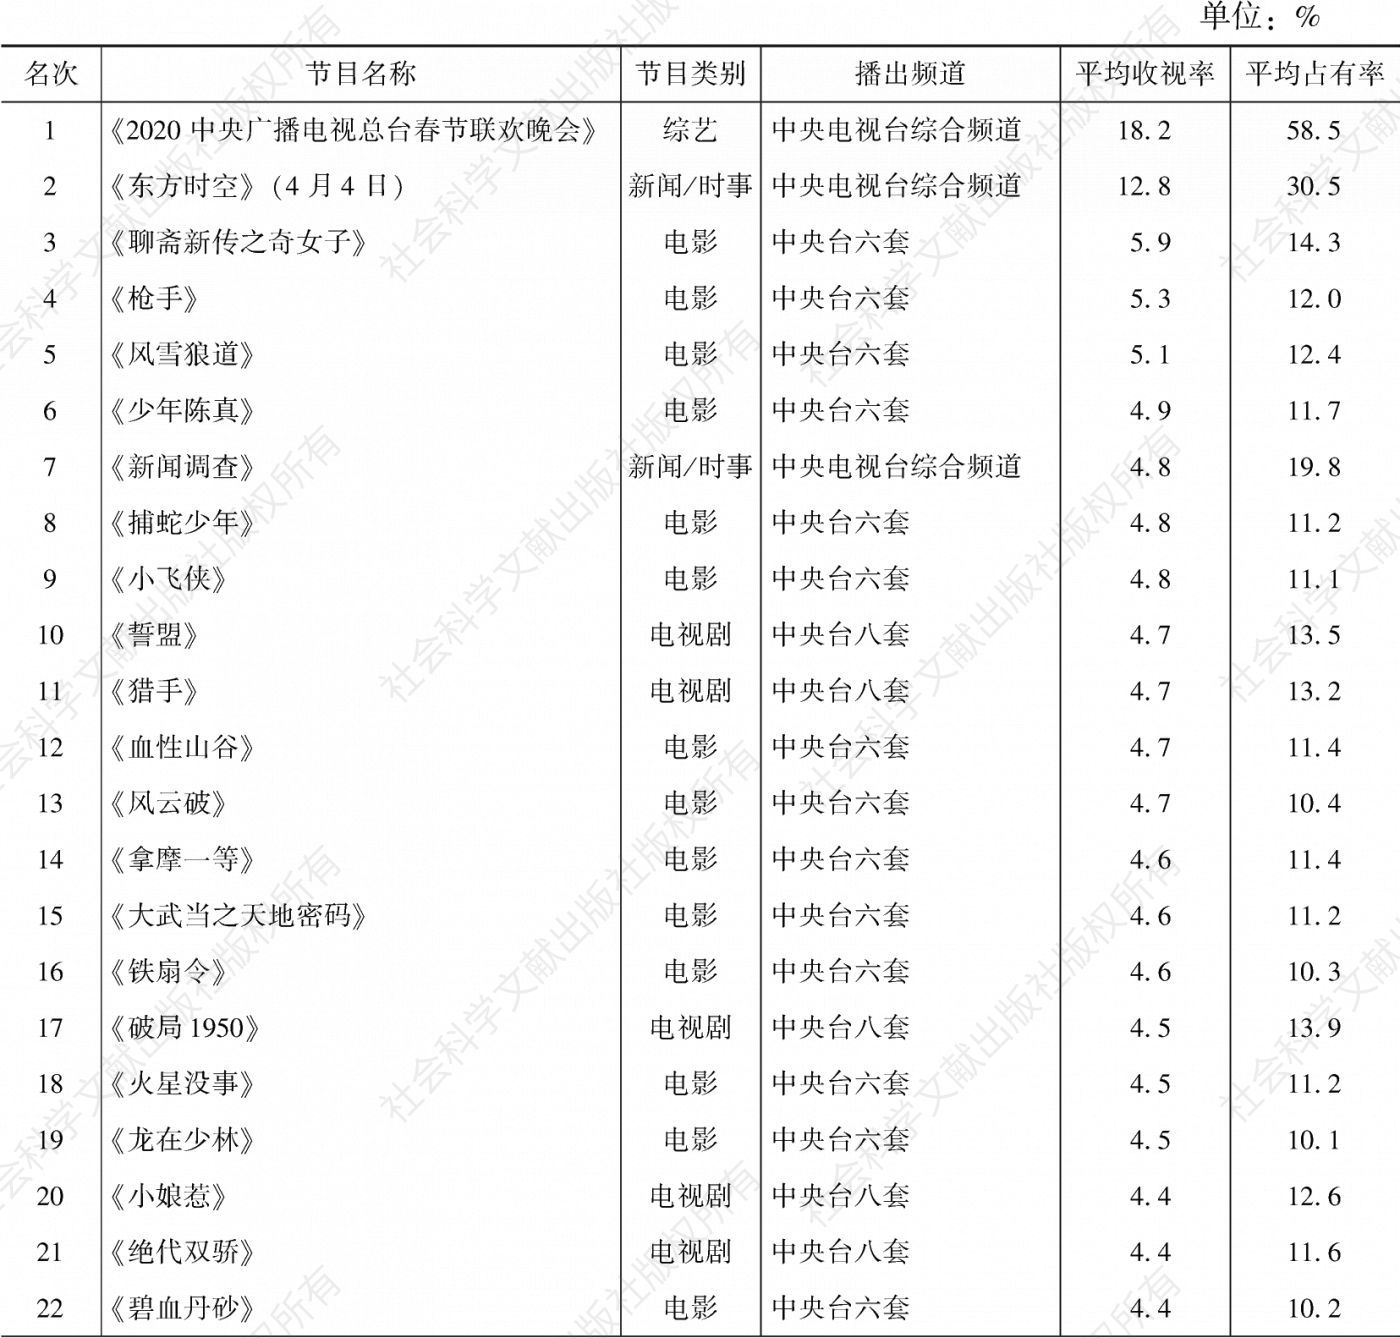 表3.25.7 2020年云南市场所有节目收视率排名前30